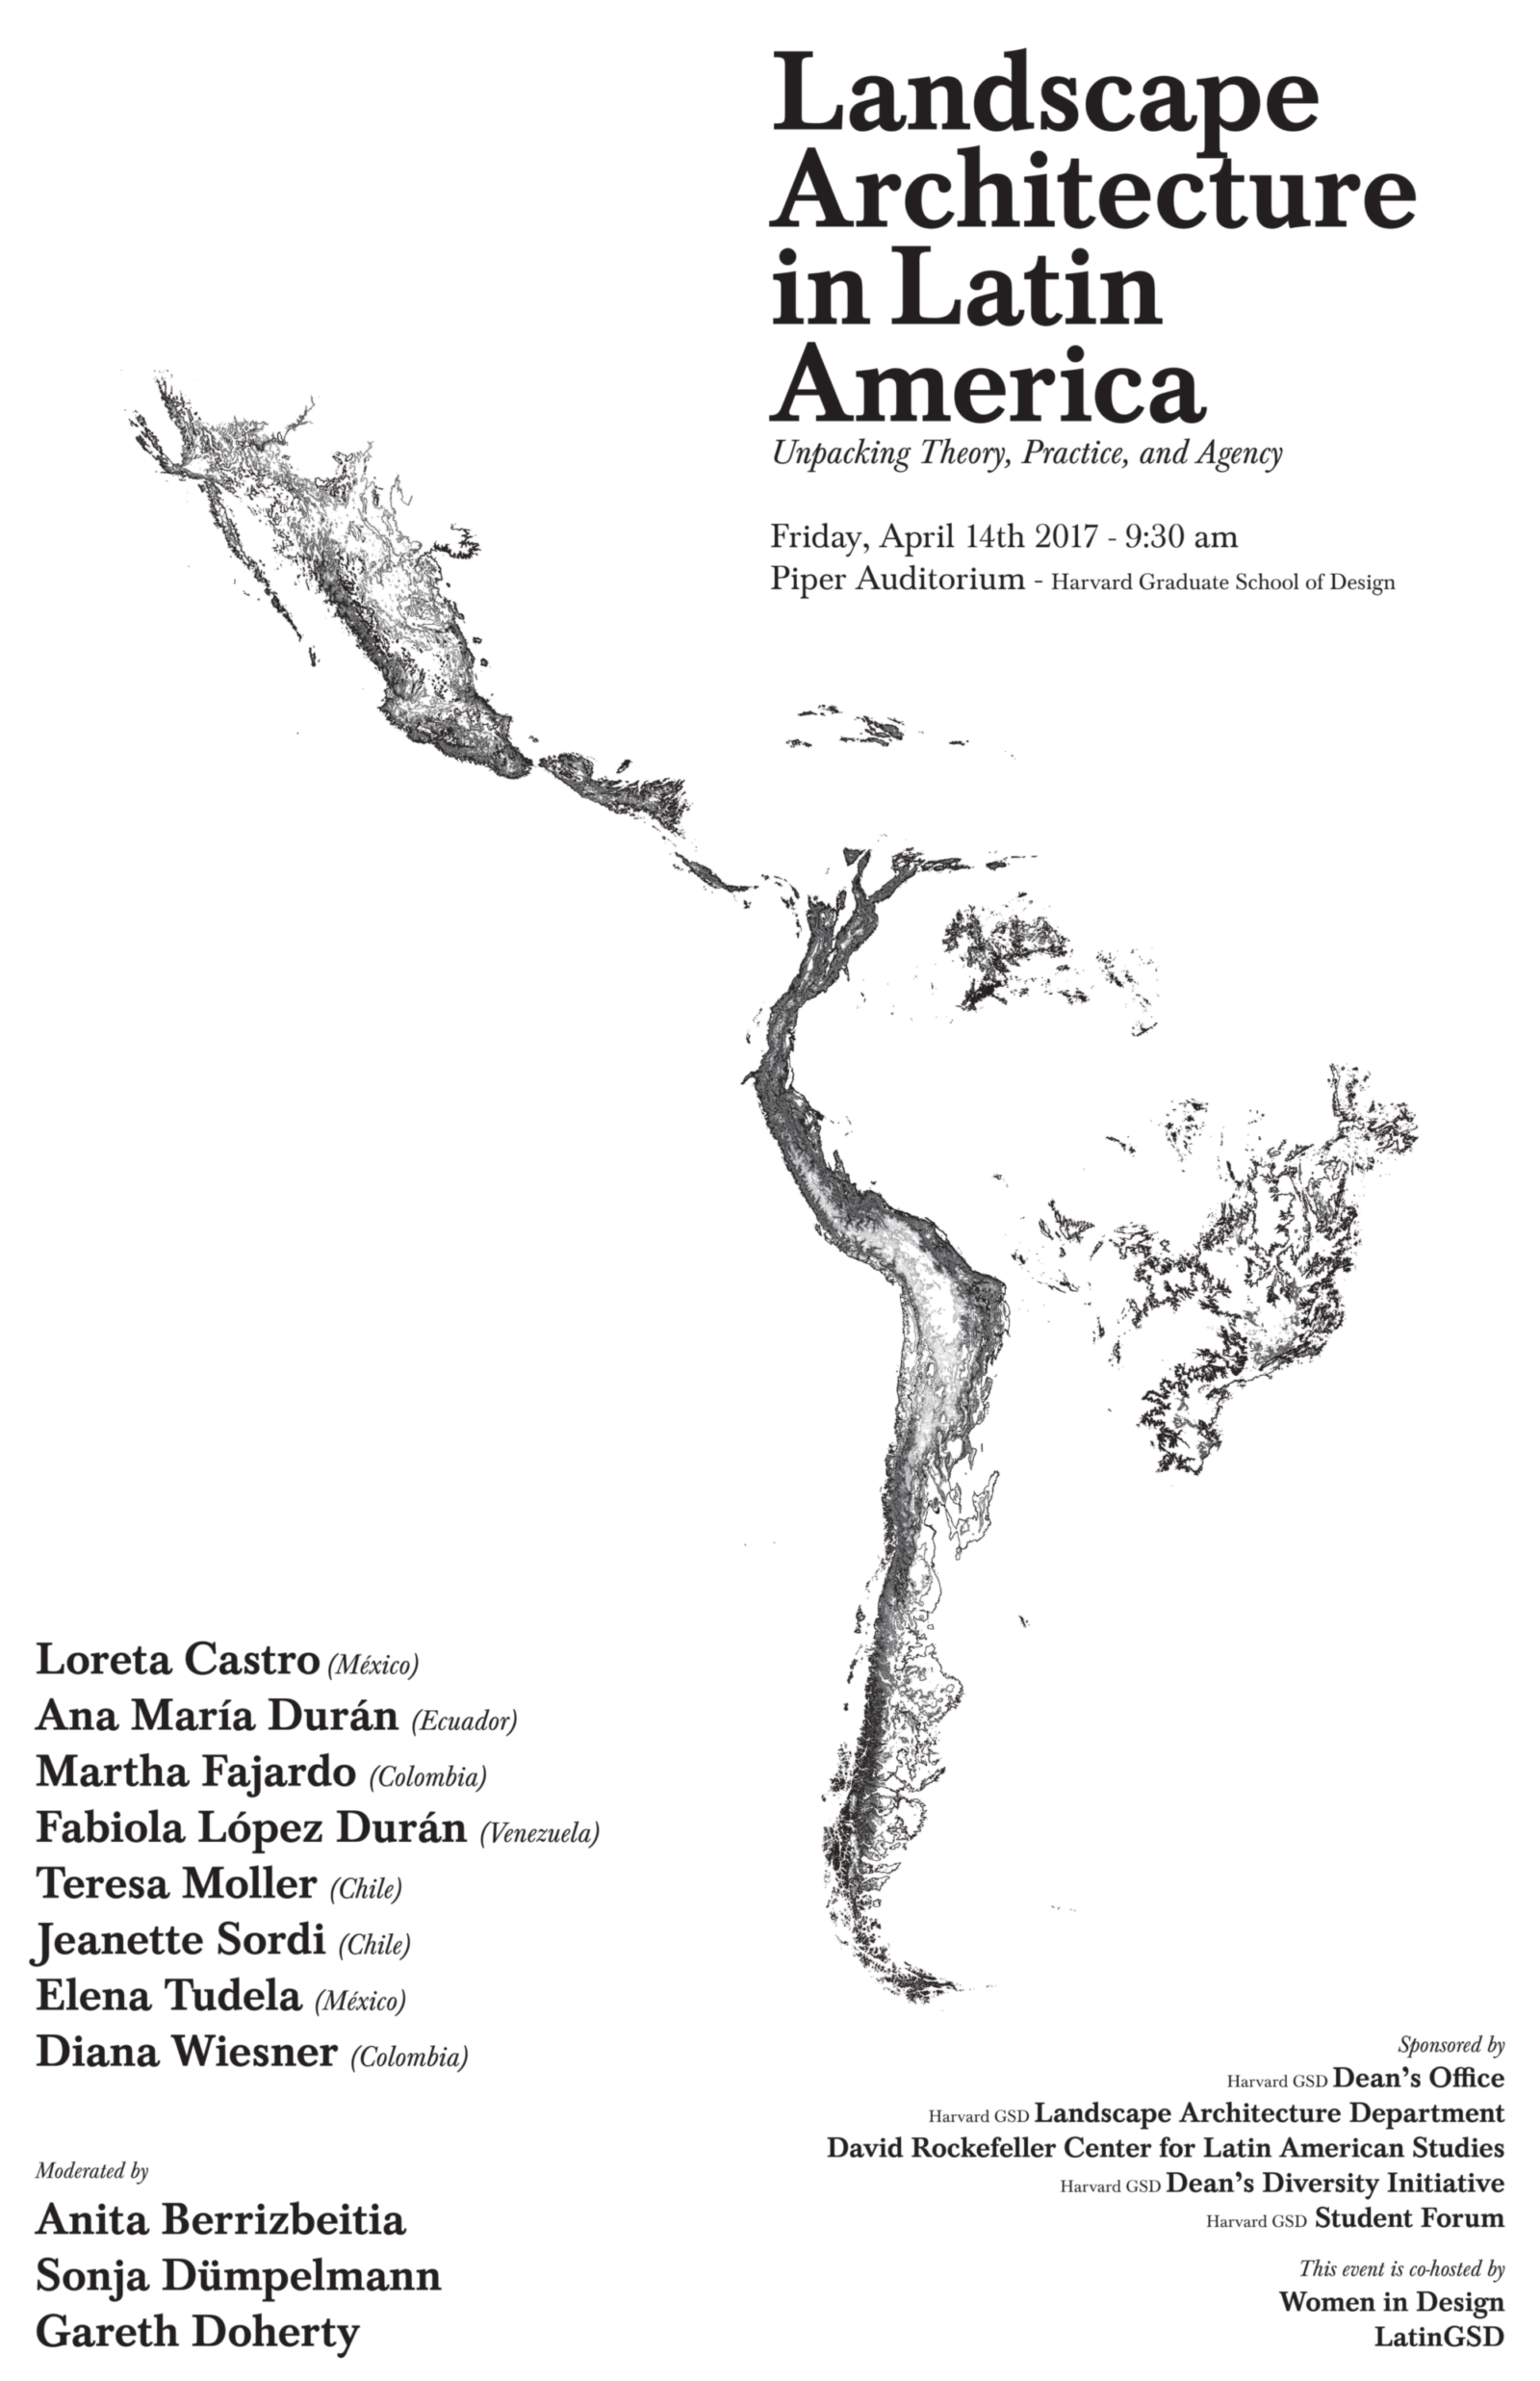 Landscape Architecture in Latin America Symposium